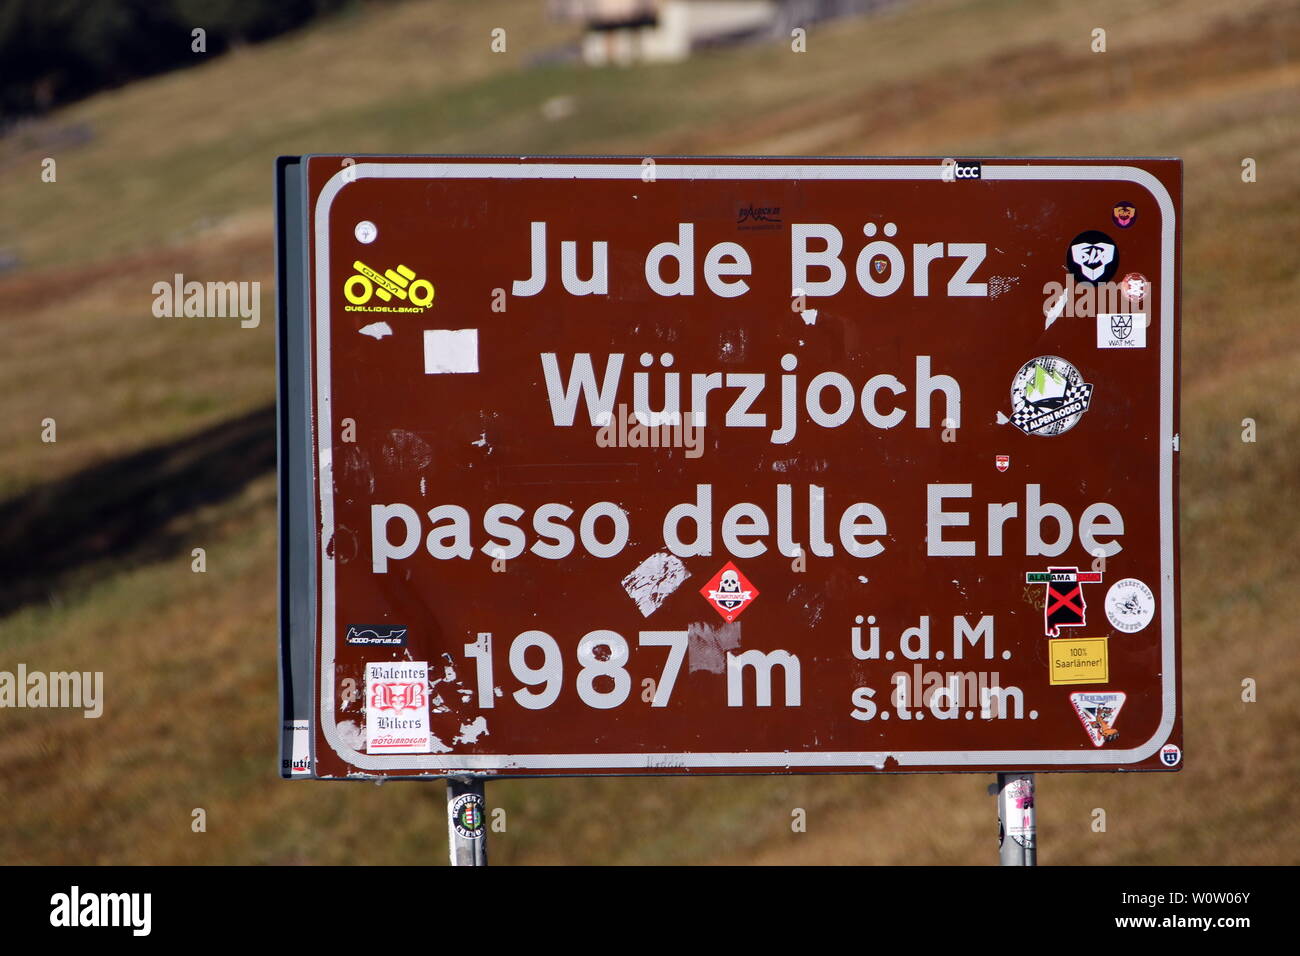 Wuerzjoch, 1987 Meter Meereshoehe in Südtirol/Alto Adige 2018 Stockfoto